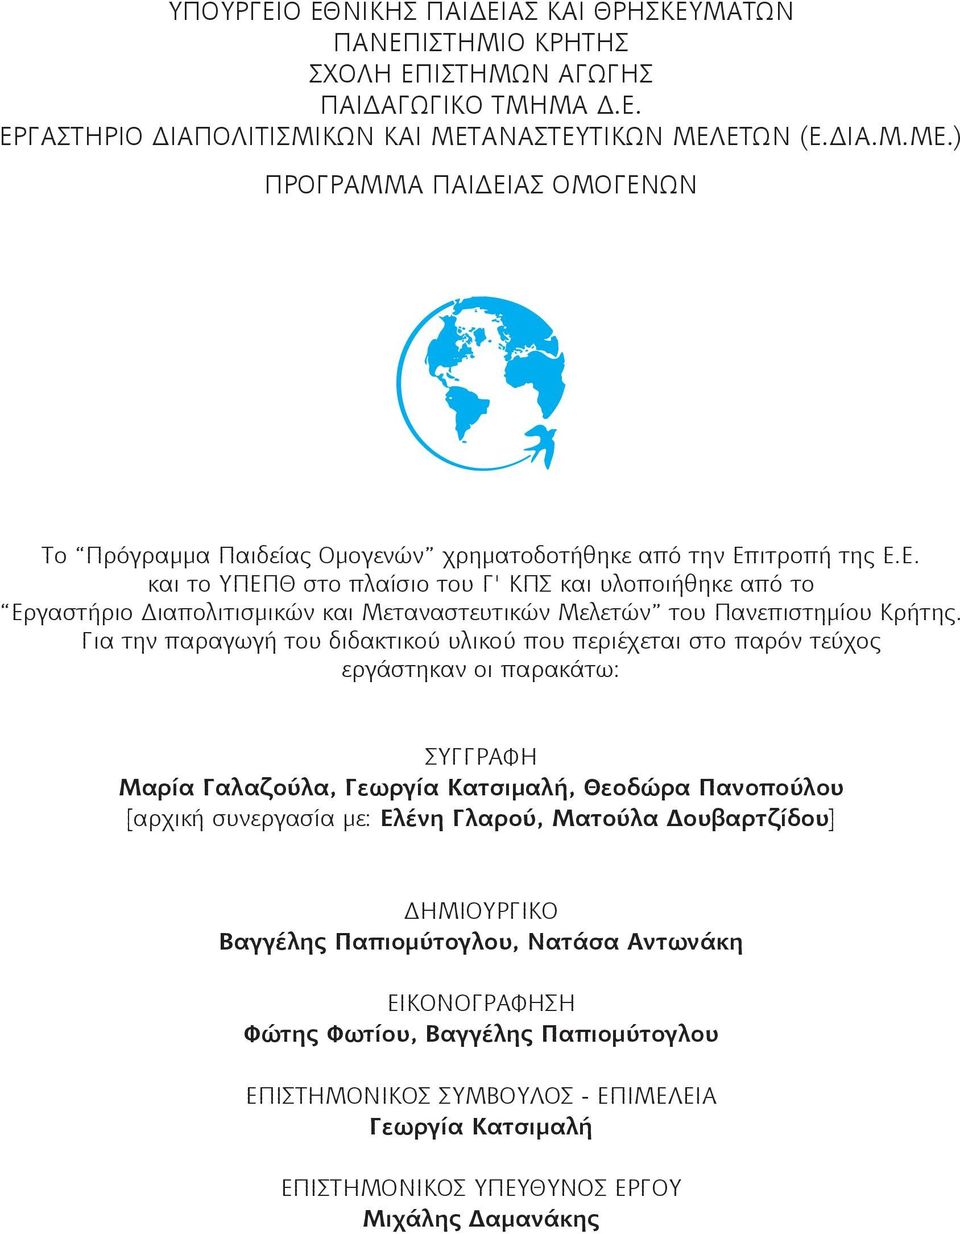 Για την παραγωγή του διδακτικού υλικού που περιέχεται στο παρόν τεύχος εργάστηκαν οι παρακάτω: ΣΥΓΓΡΑΦΗ Μαρία Γαλαζούλα, Γεωργία Κατσιμαλή, Θεοδώρα Πανοπούλου [αρχική συνεργασία με: Ελένη Γλαρού,